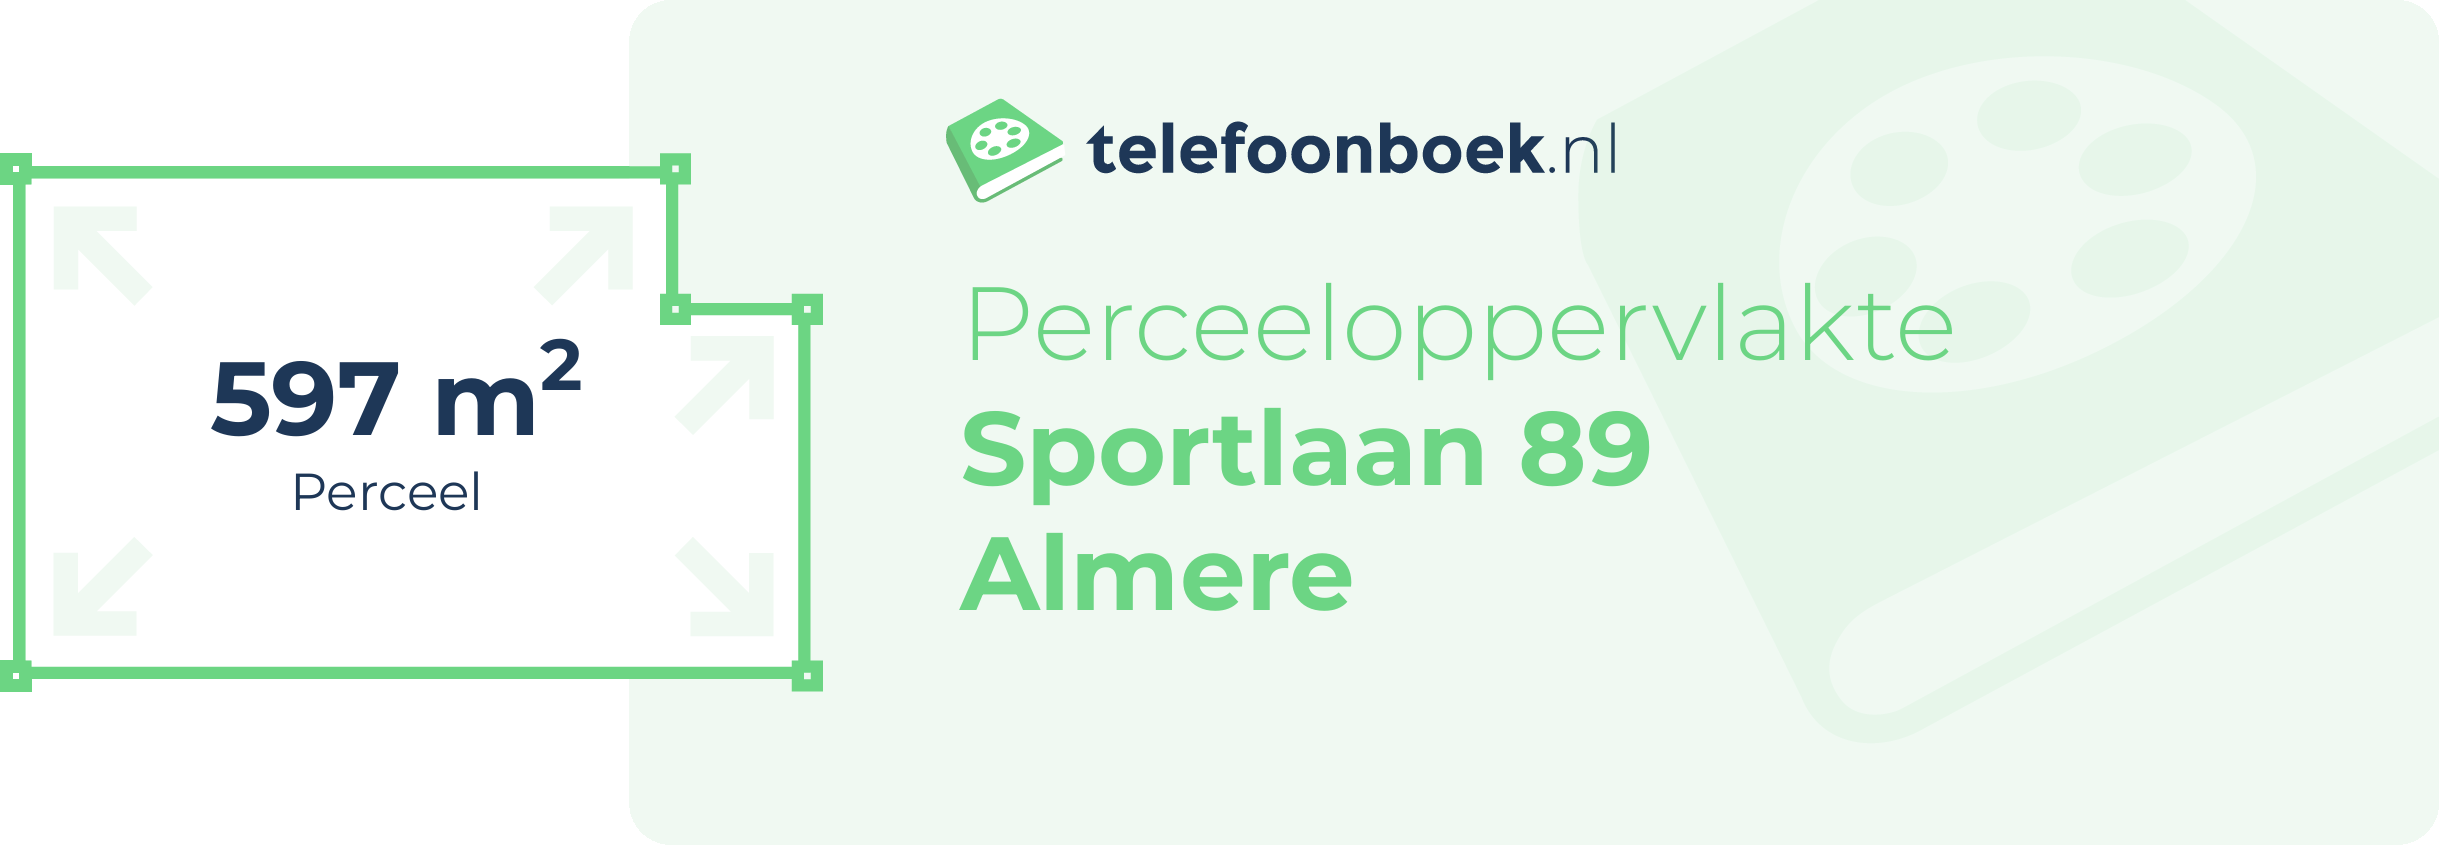 Perceeloppervlakte Sportlaan 89 Almere